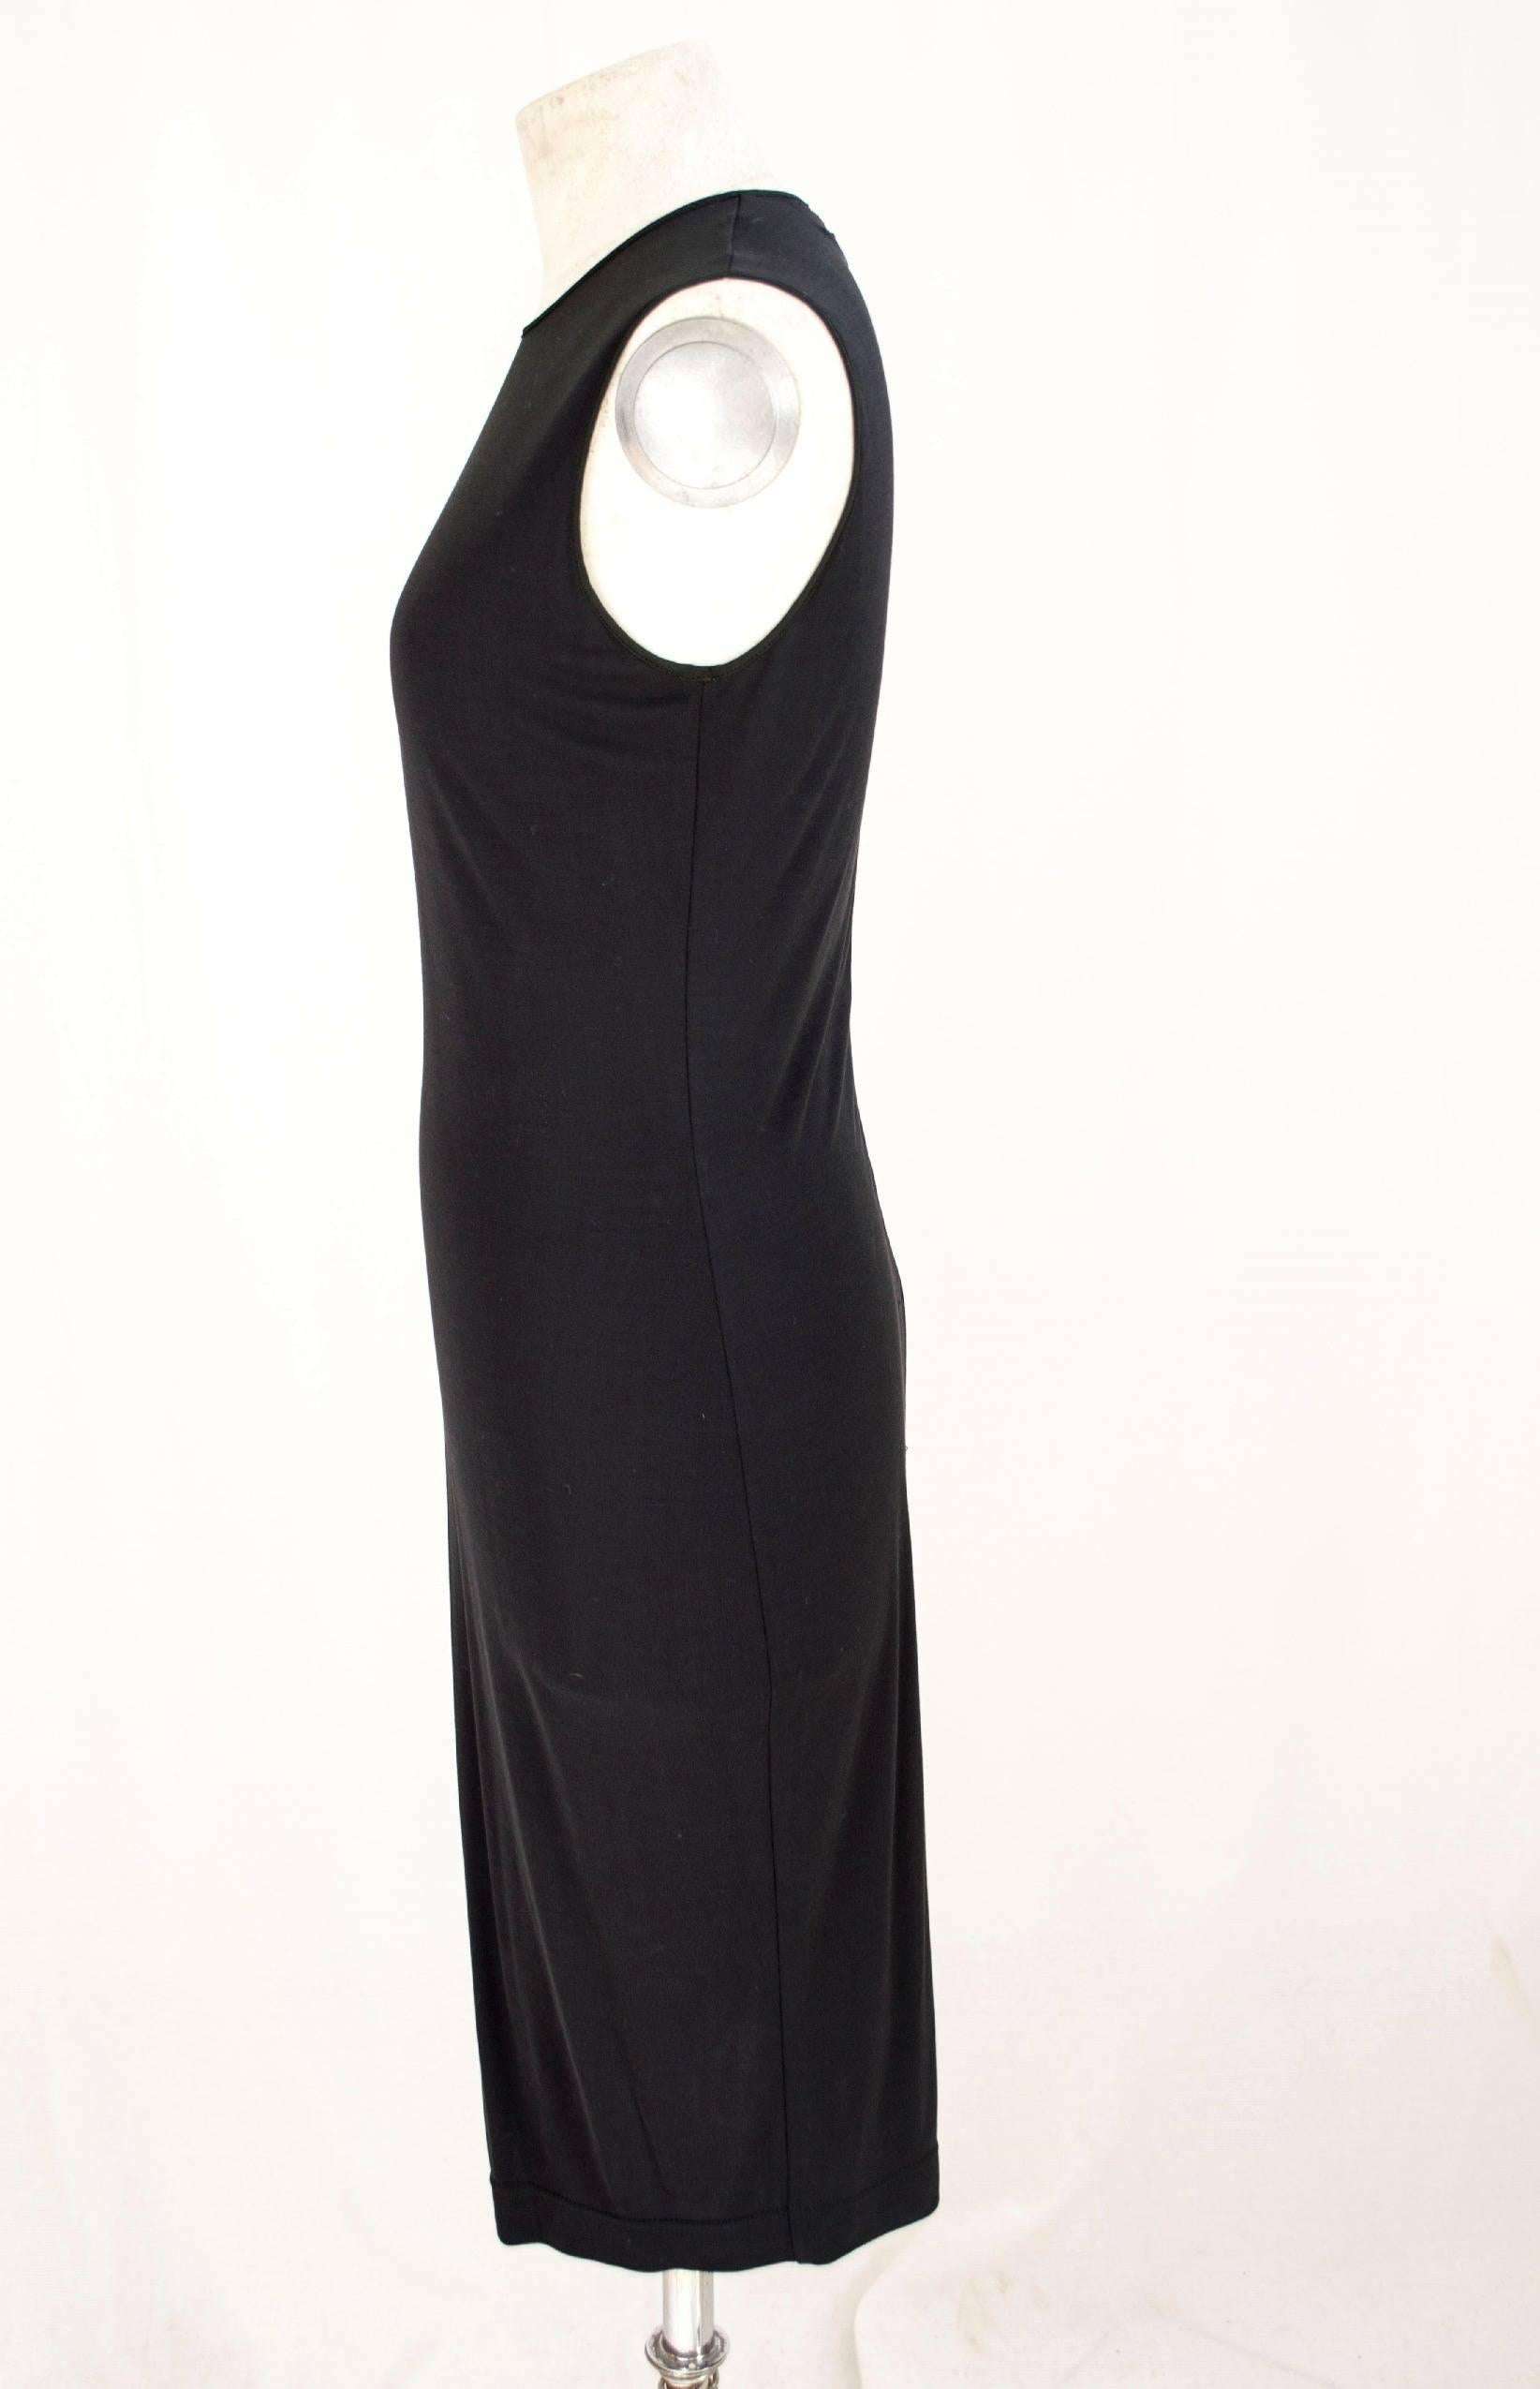 Black Gianfranco Ferrè 1980s sheath dress women's black silk blend size 40